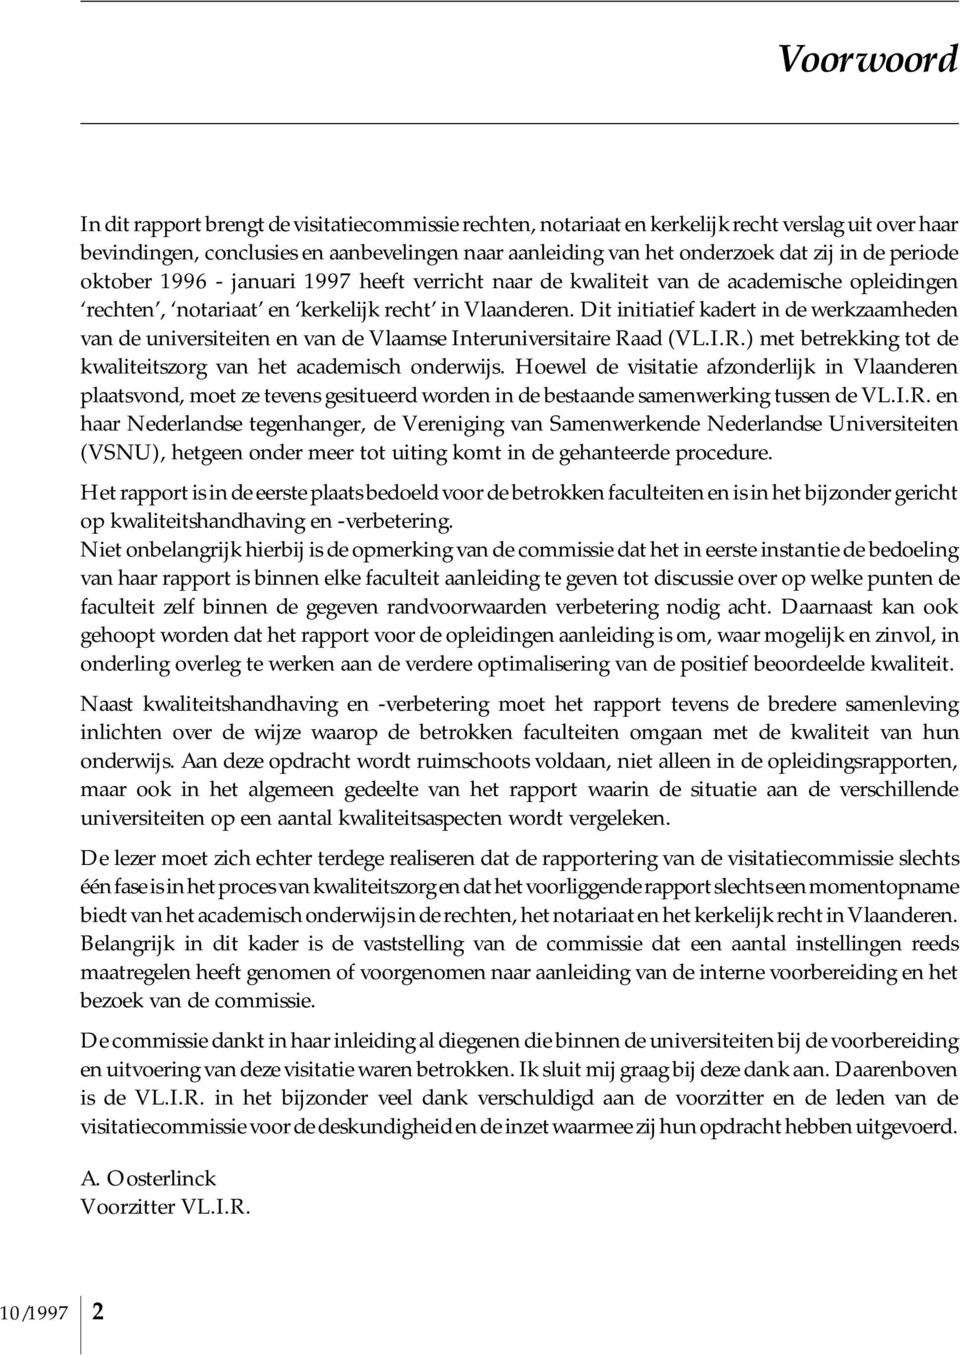 Dit initiatief kadert in de werkzaamheden van de universiteiten en van de Vlaamse Interuniversitaire Raad (VL.I.R.) met betrekking tot de kwaliteitszorg van het academisch onderwijs.